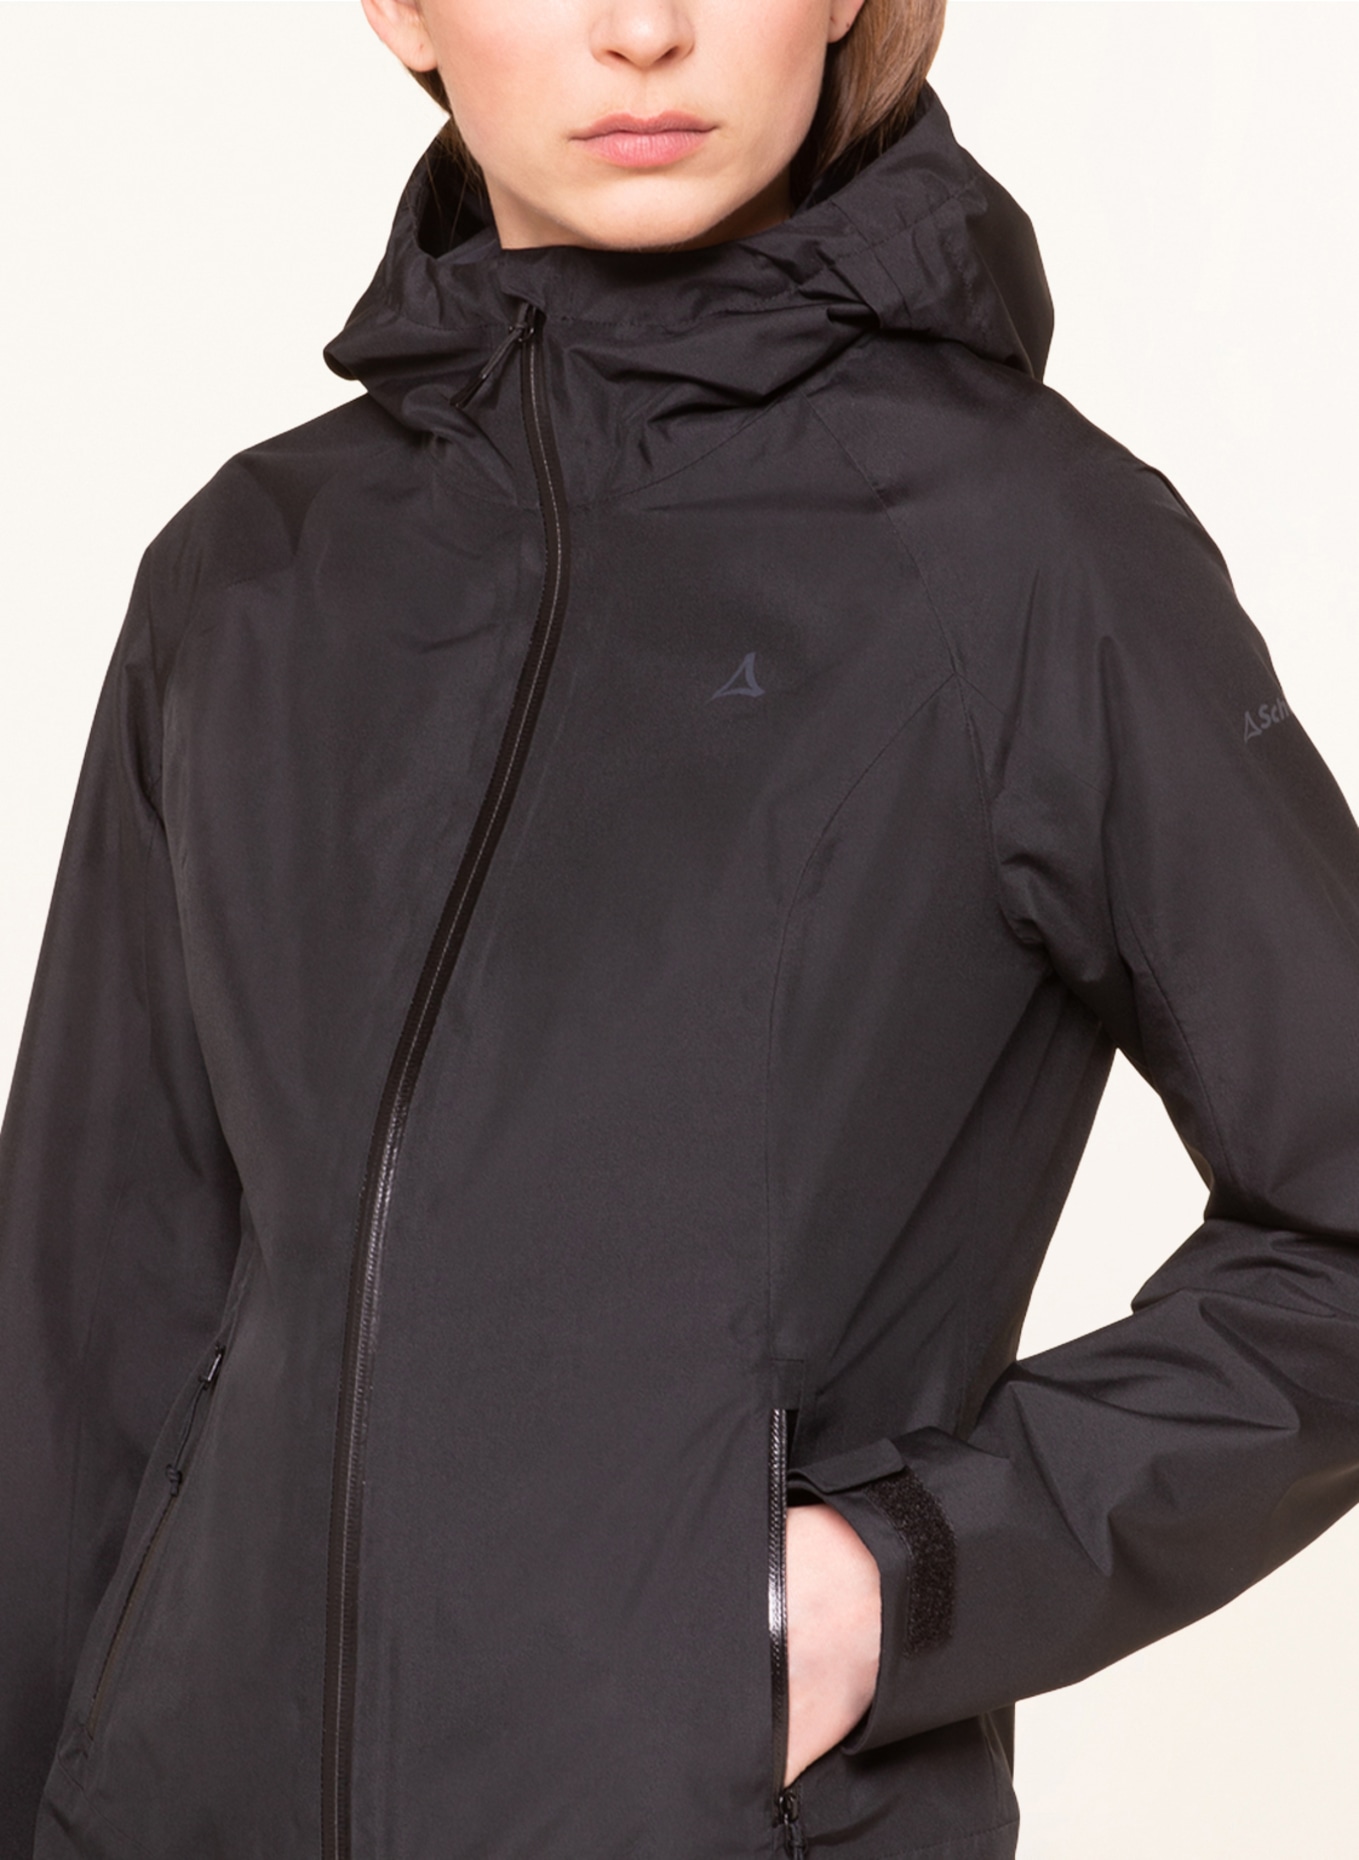 WAMBERG Schöffel jacket in Outdoor black